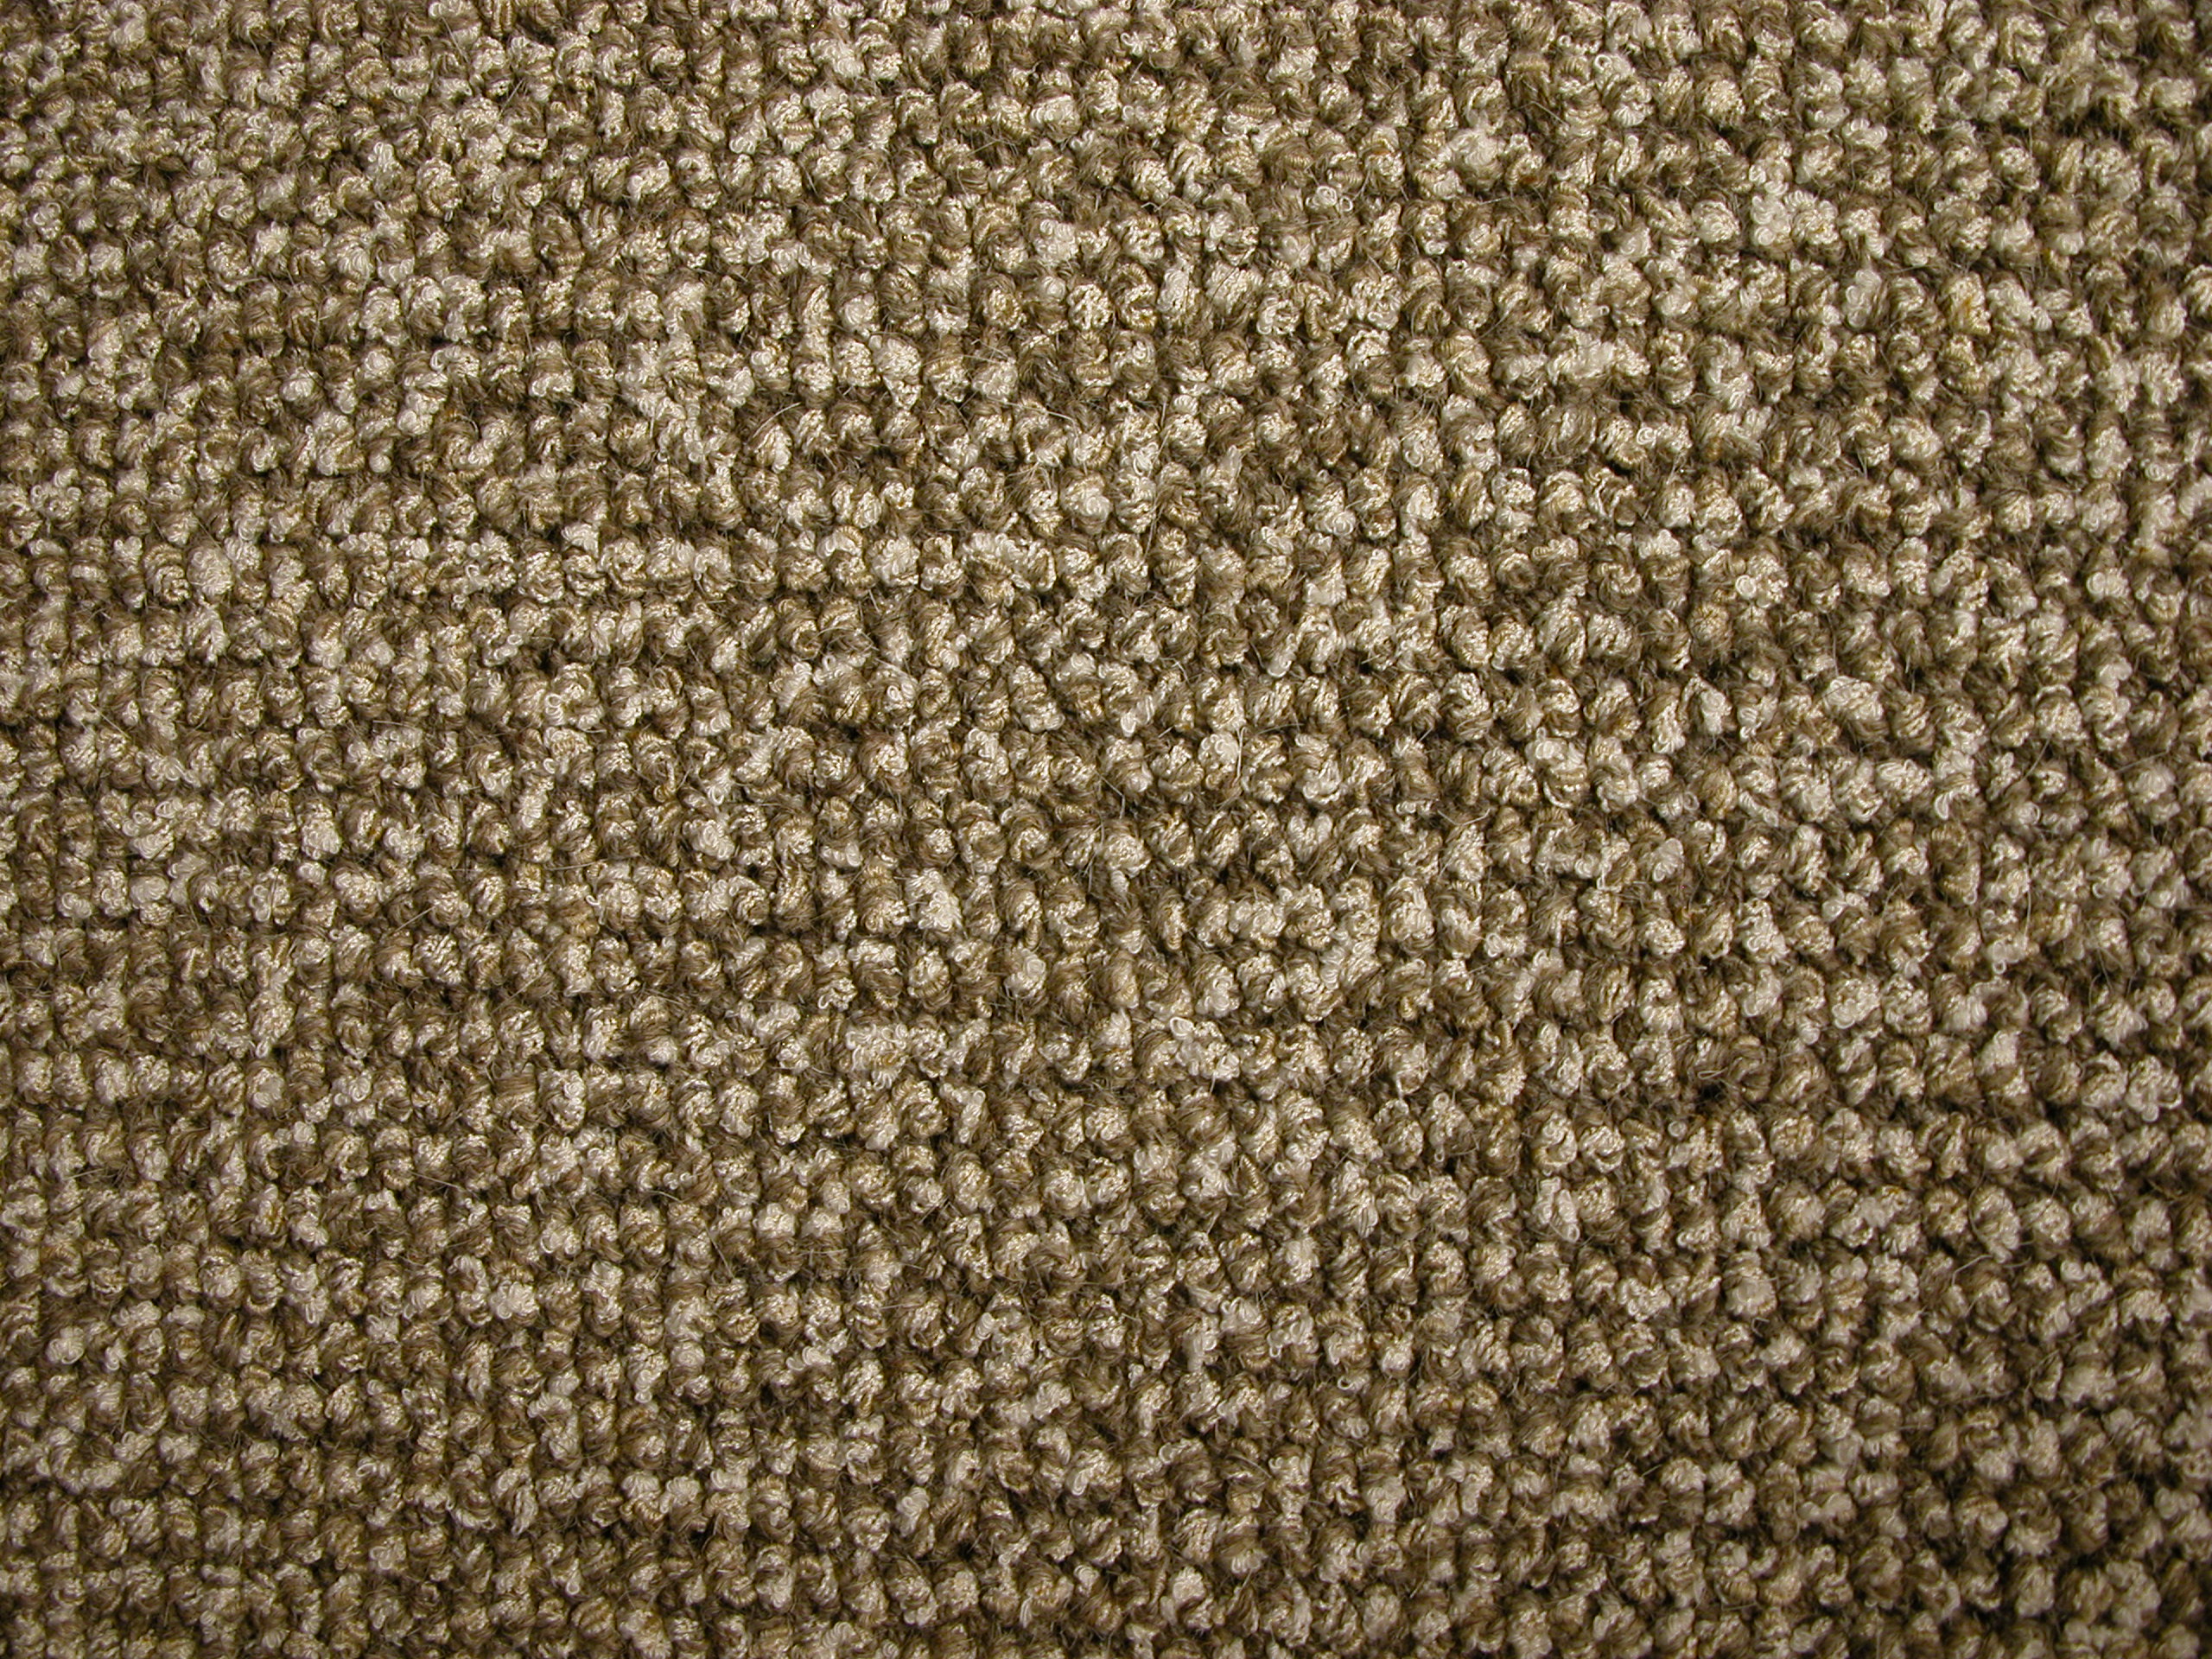 fabrics rug texture grounds coarse wool woolen